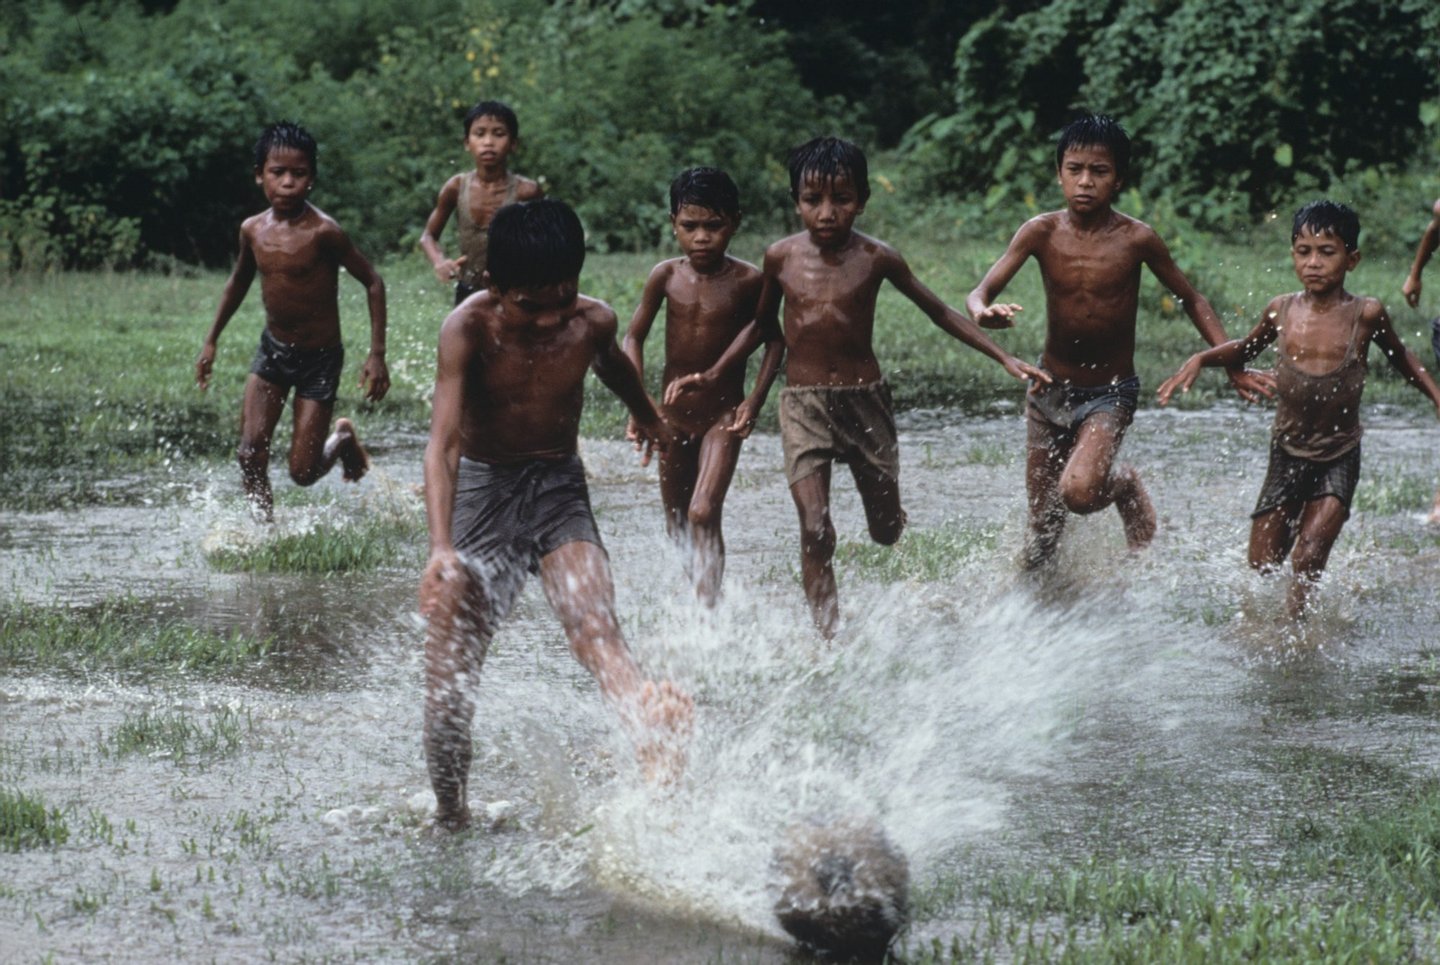 1983, BANGLADESH-10006.jpg, Bangladesh, boys, green, play, puddle, run, water, 